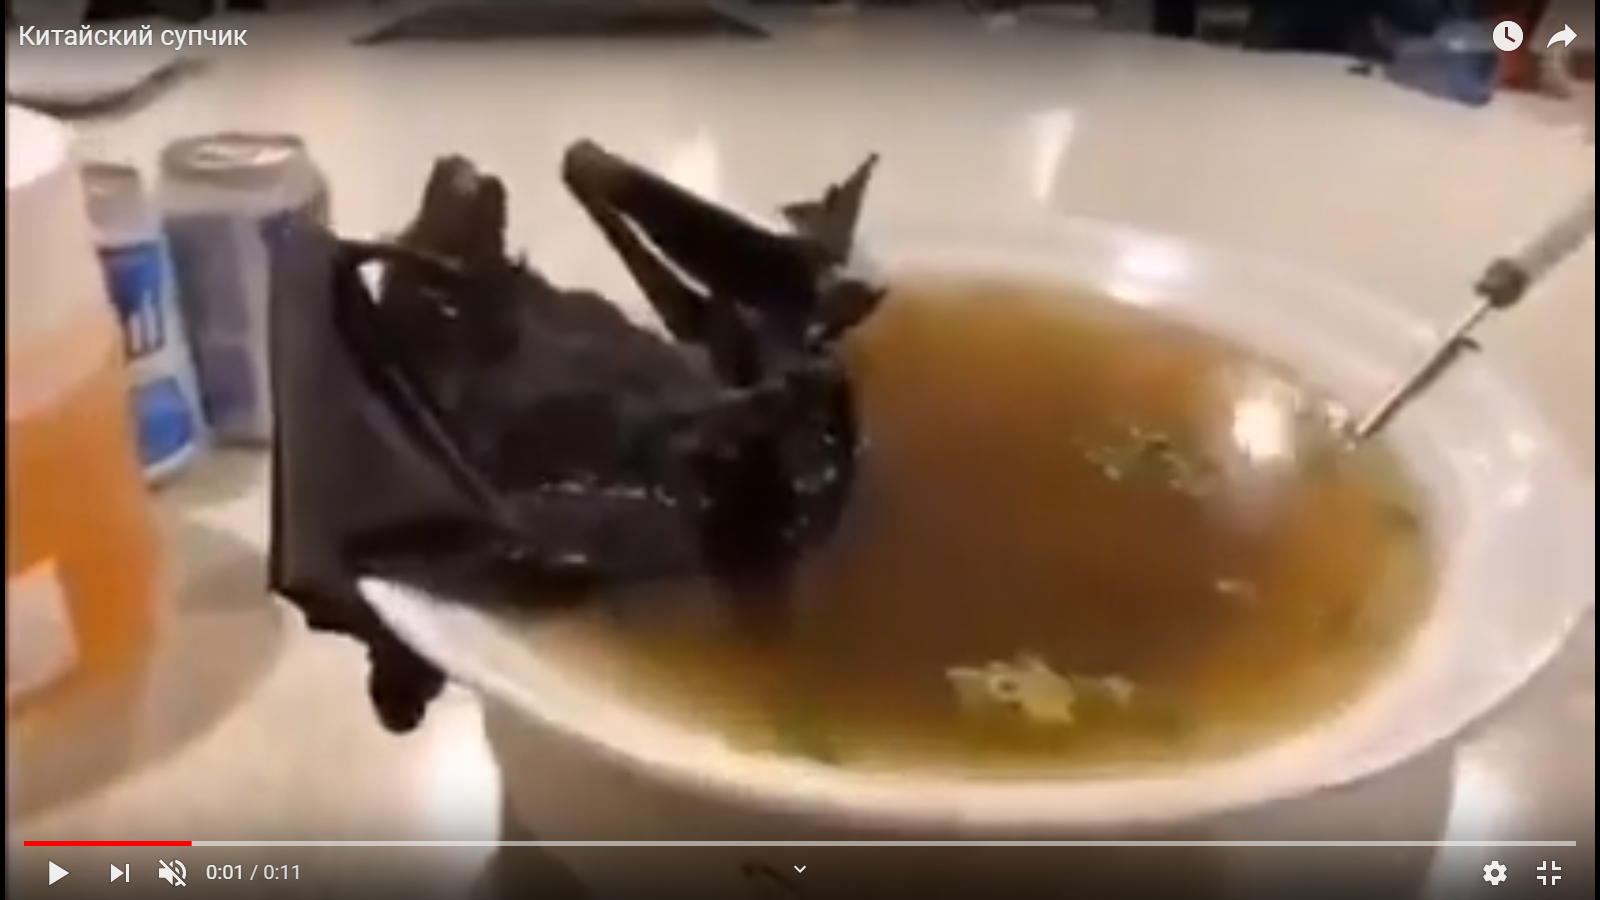 Видео дня: тарелка с супом, из которой вышла эпидемия коронавируса